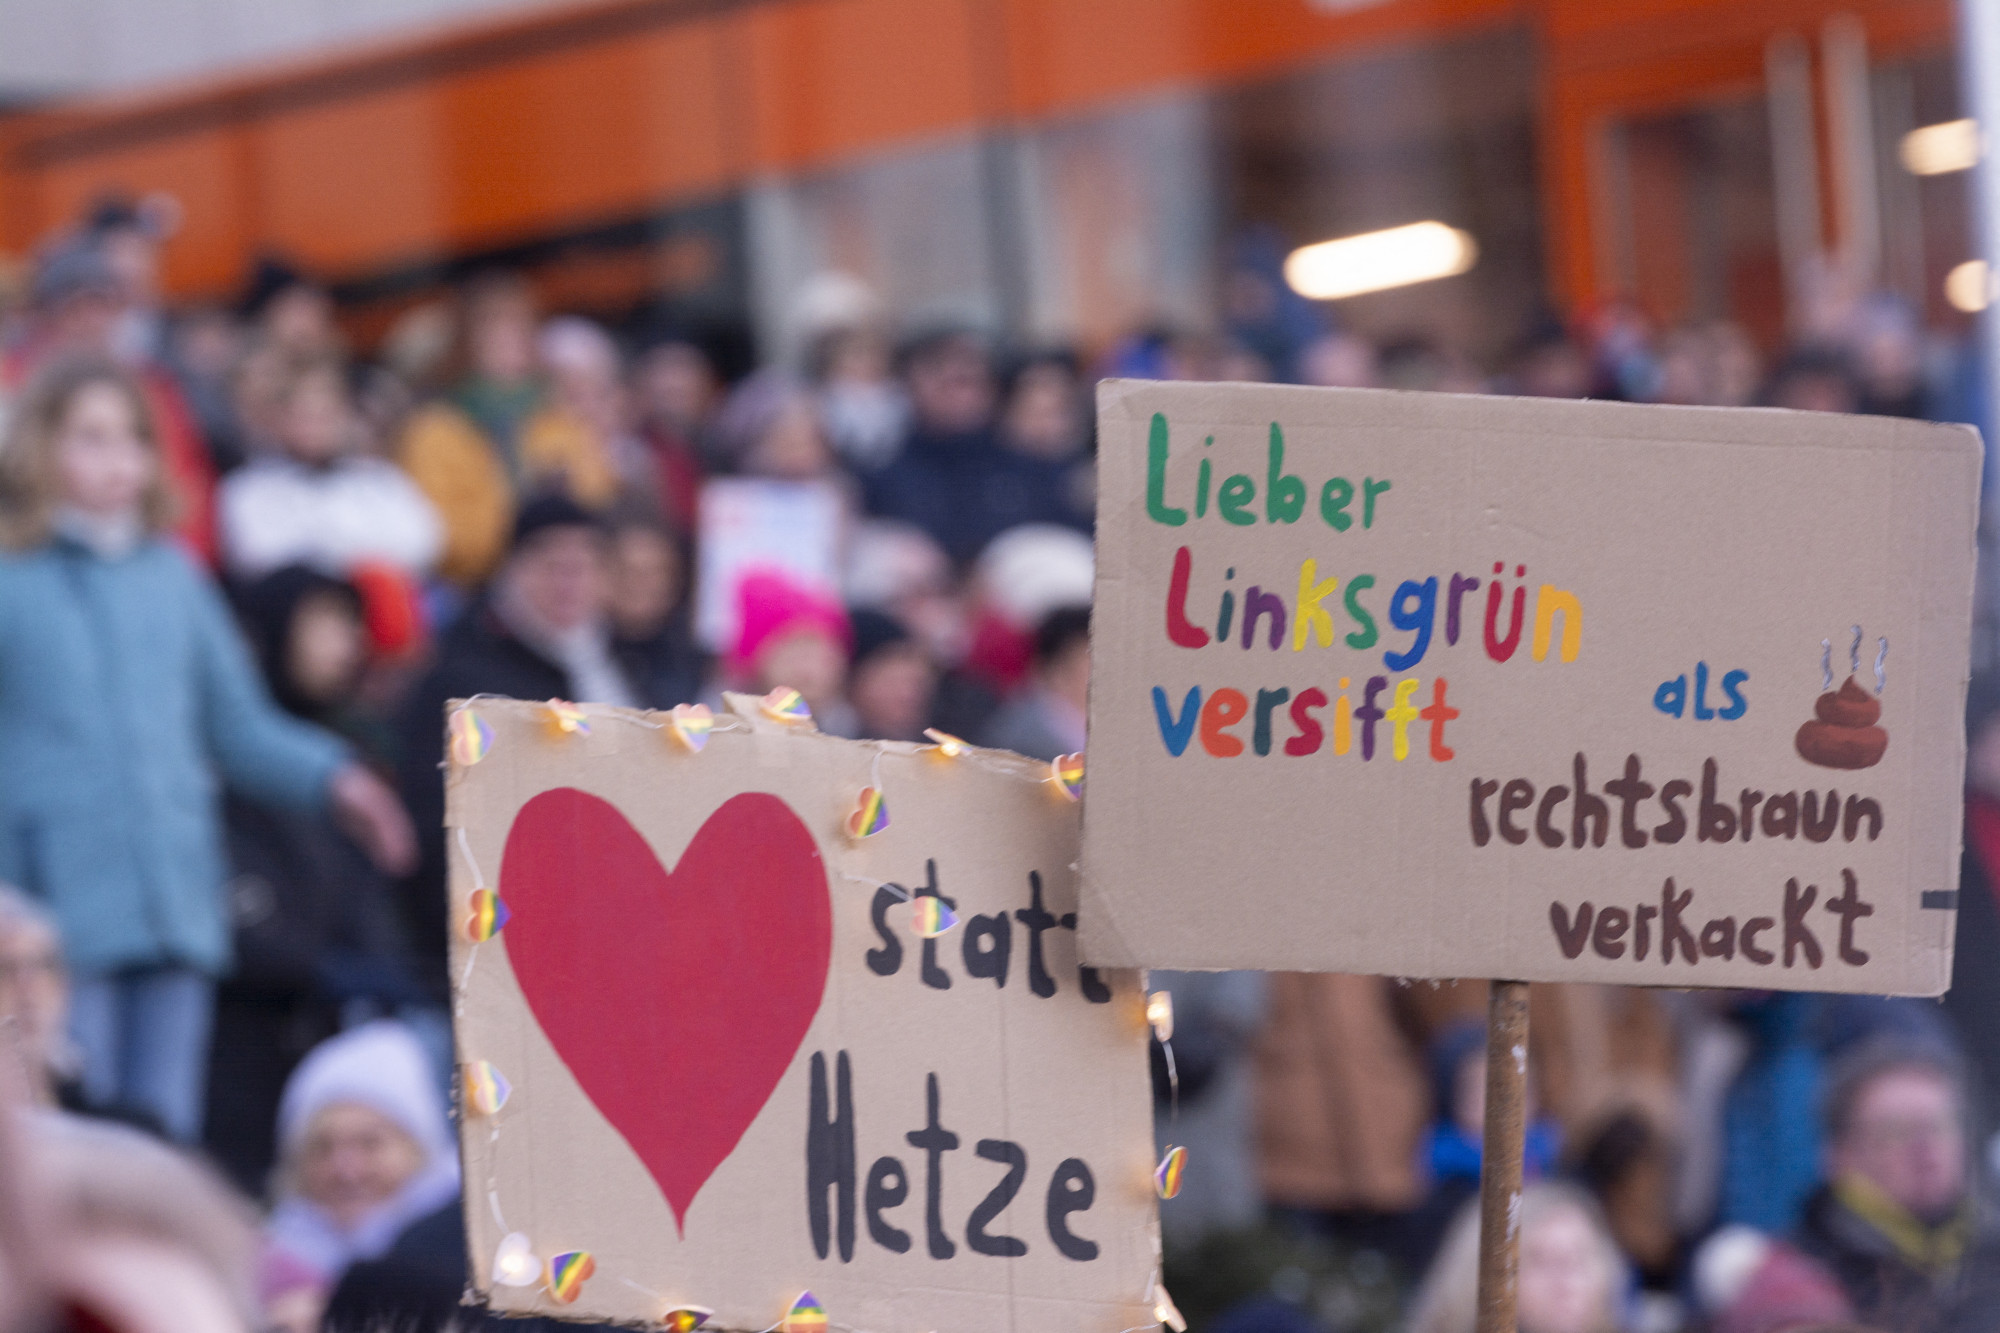 Több mint százezren tüntettek Németország-szerte az AfD ellen a deportálási tervről tartott találkozó miatt